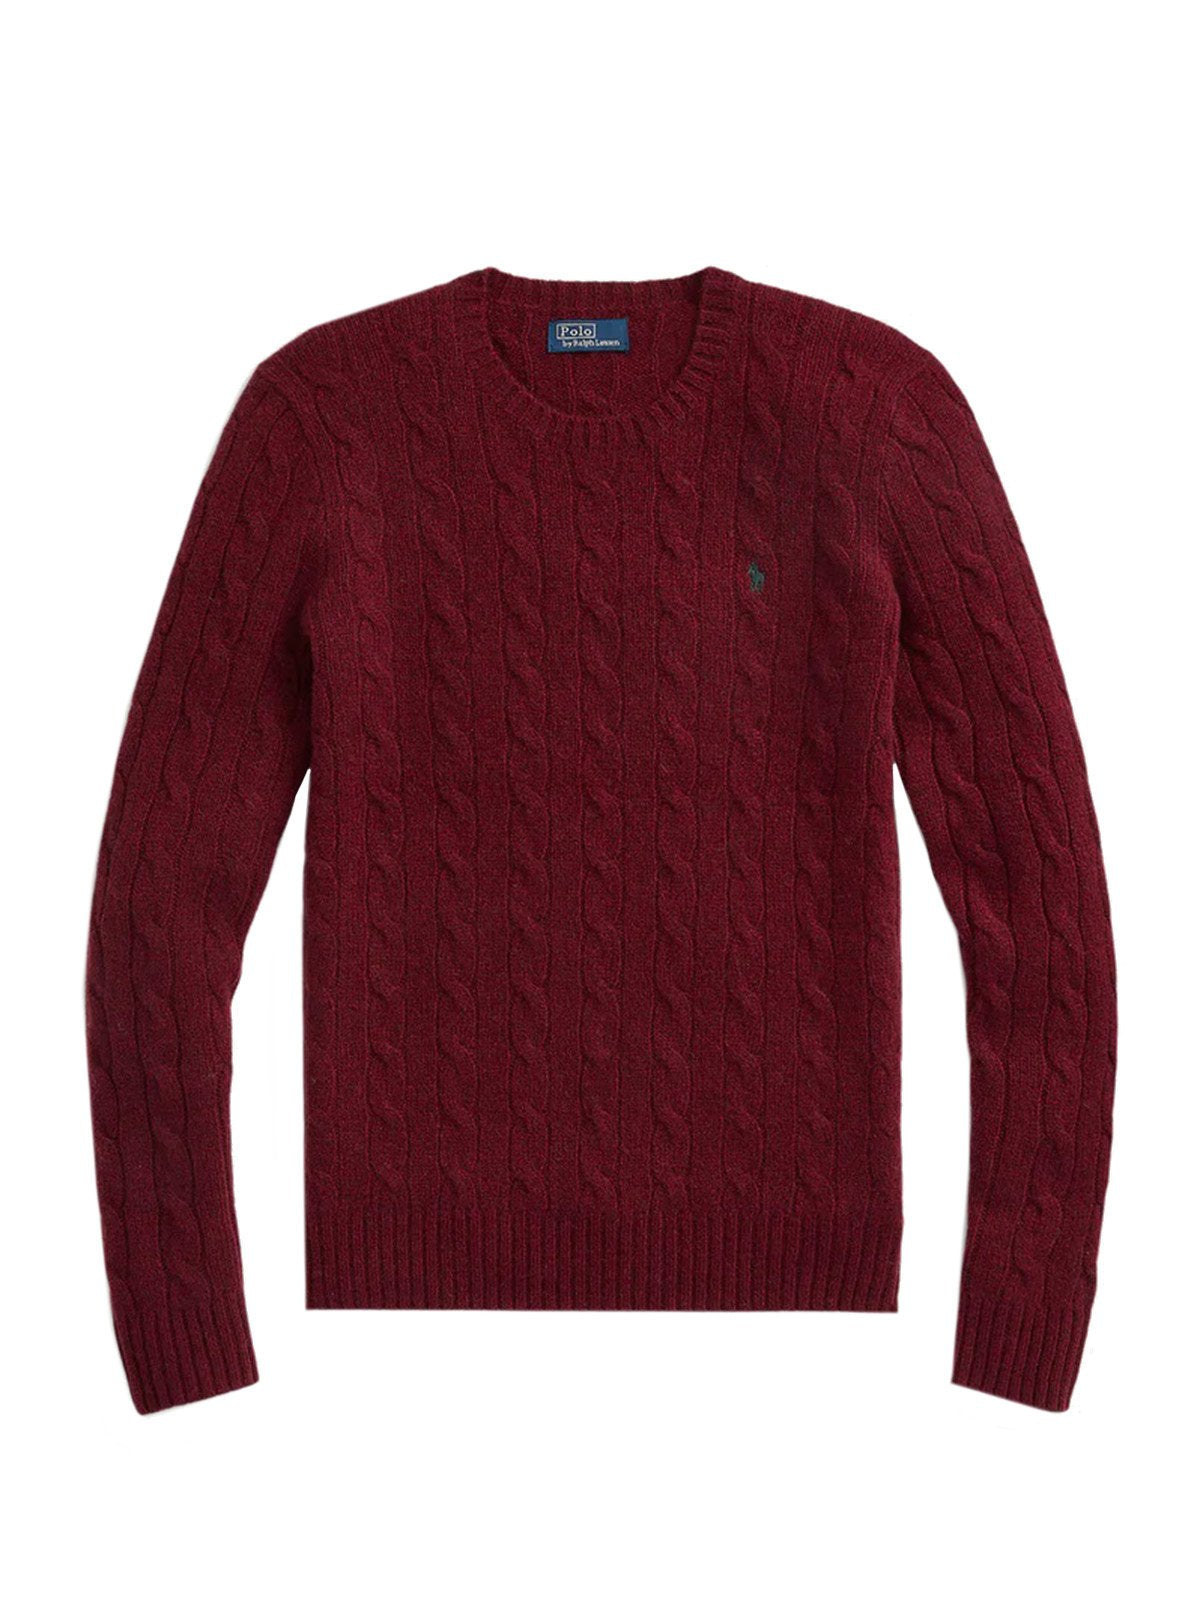 Maglioni Donna Ralph Lauren - Julianna Cable-Knit Crewneck Wool Cashmere Sweater - Bordeaux